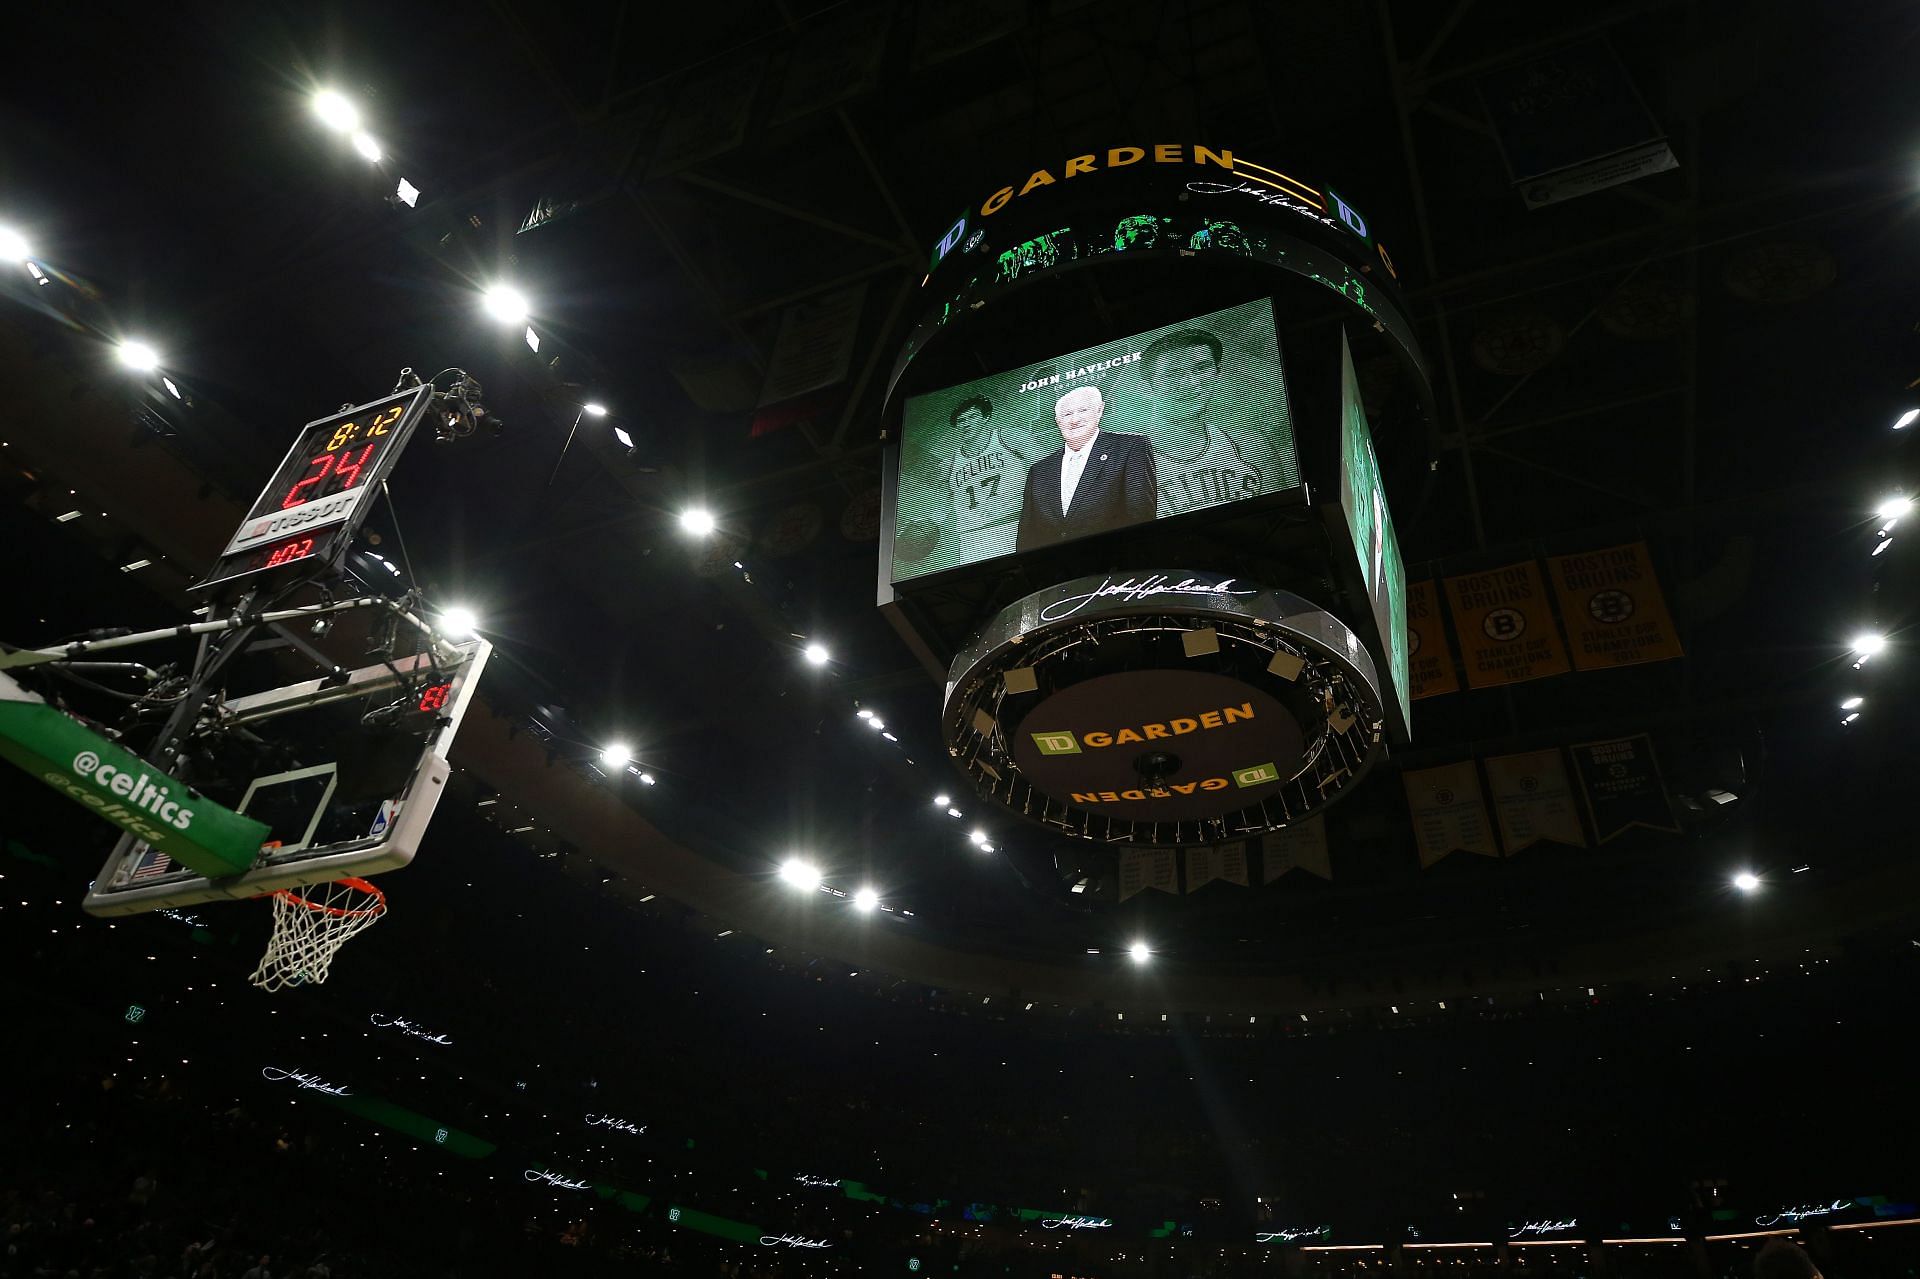 Boston Celtics accomplishments and records - Wikipedia